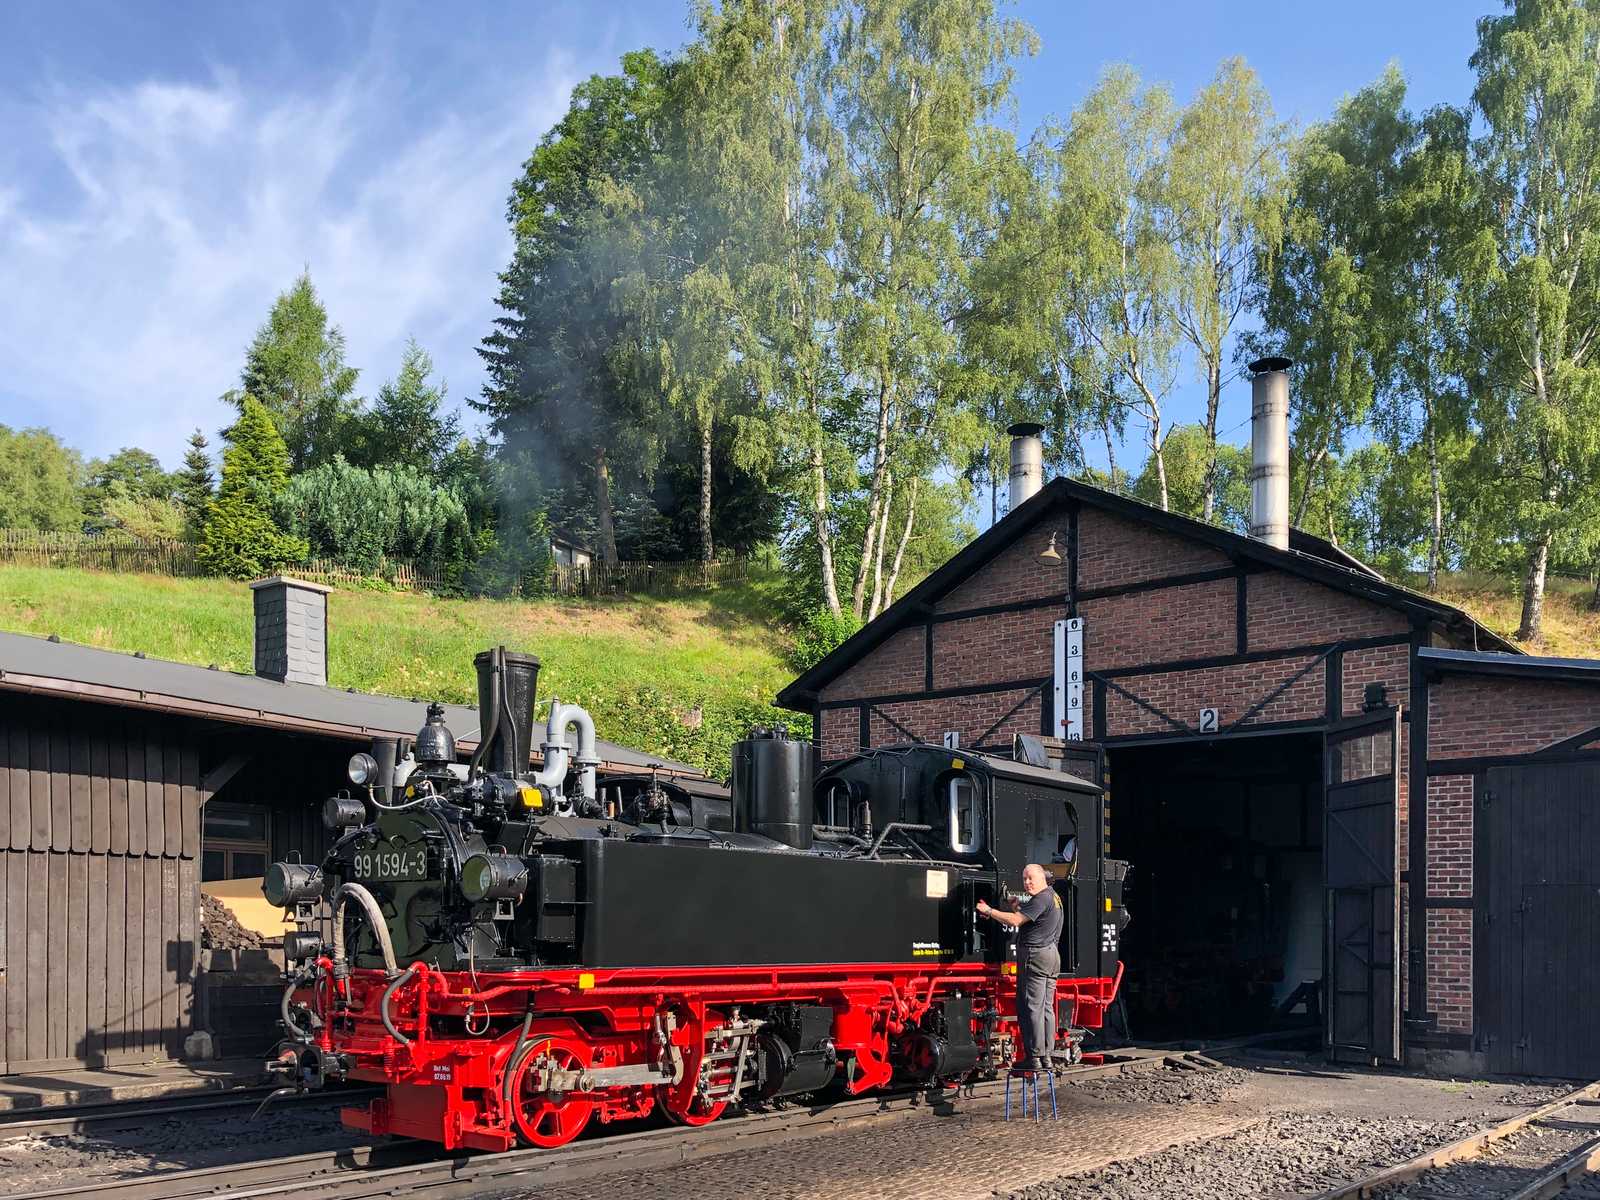 Schmalspur-Dampflokomotive 99 1594 und Güterzugdampflokomotive 861193 Postkarte